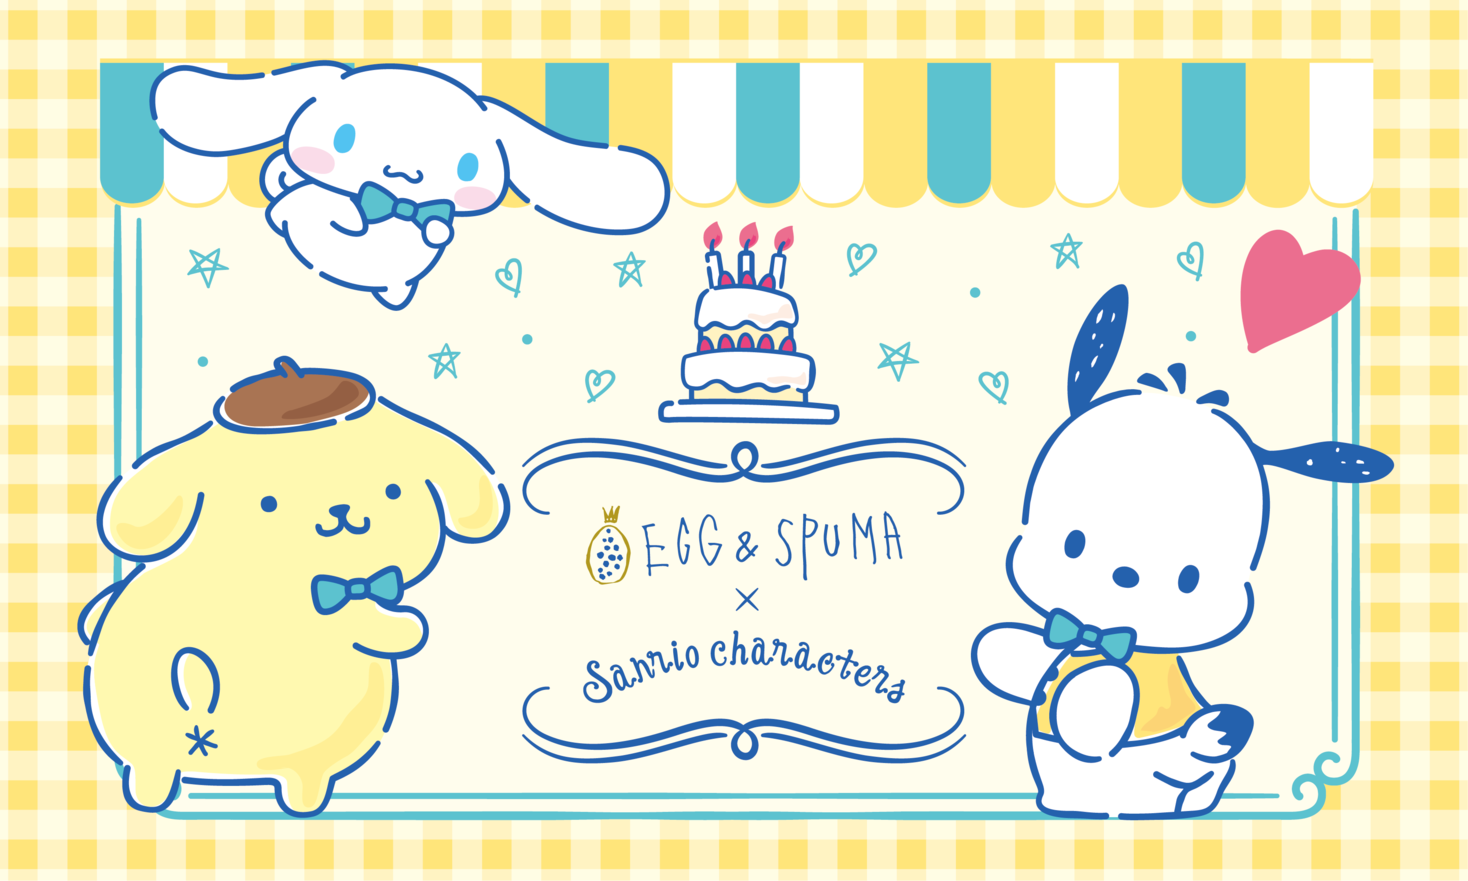 Egg Spuma Sanrio Dogキャラクターのコラボカフェ Sanrio Characters Cafe が期間限定でｏｐｅｎ ソルト コンソーシアム株式会社のプレスリリース